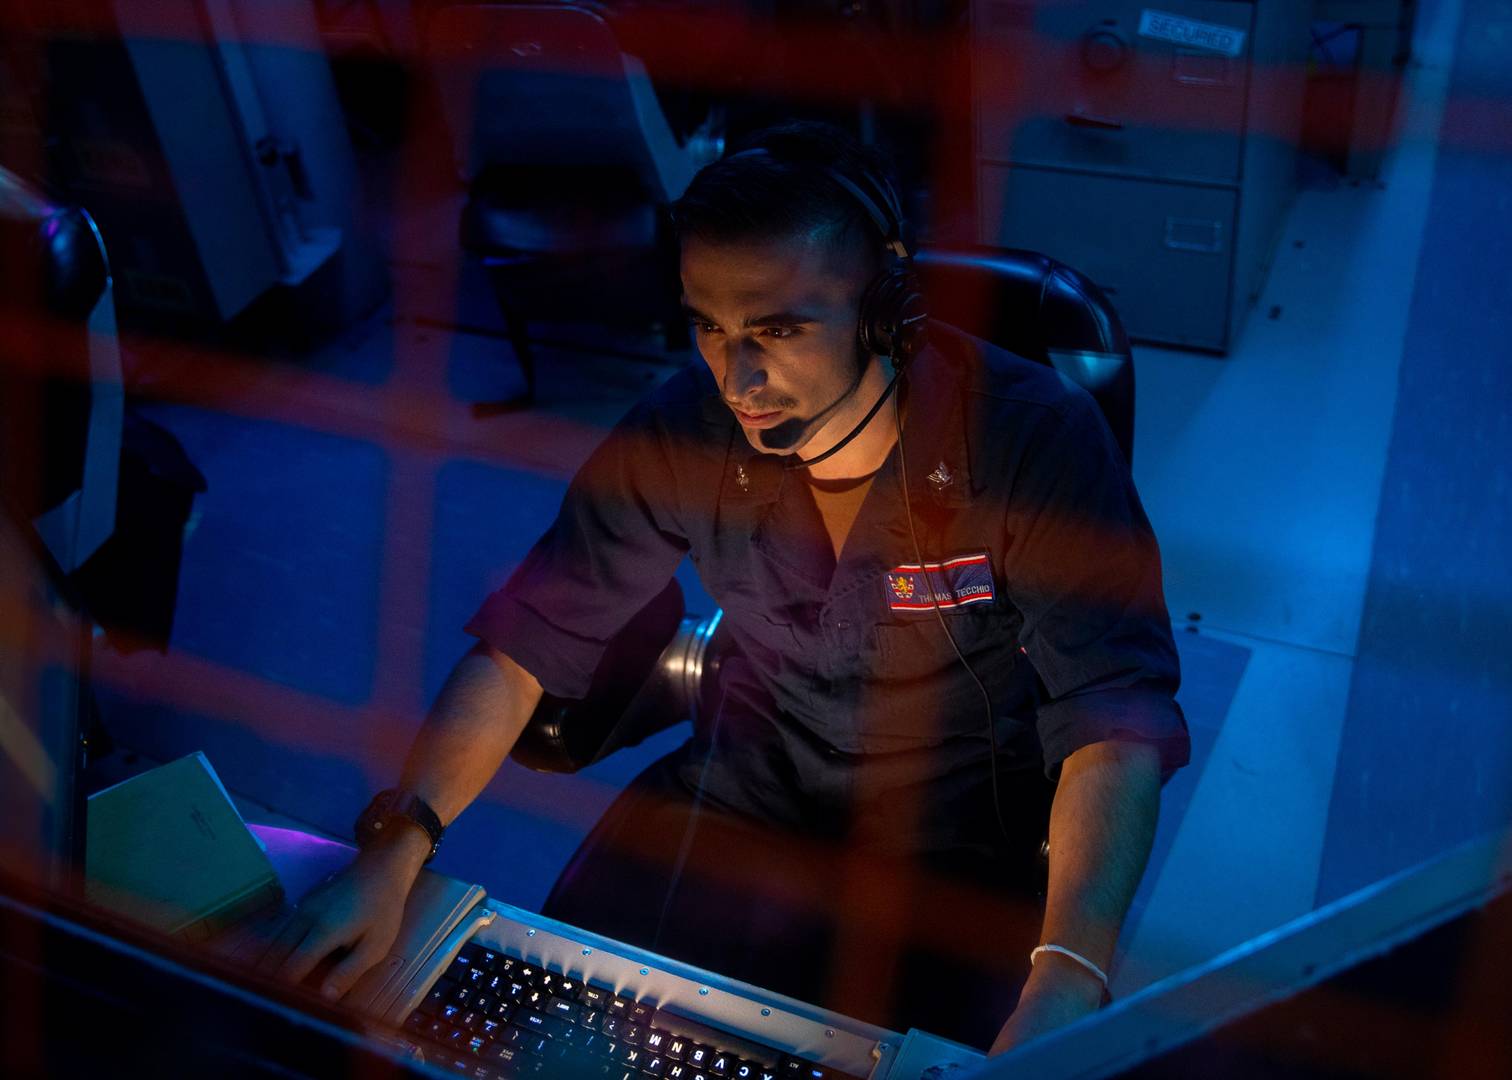 Американский военнослужащий несет вахту на станции воздушного радиослежения, вручную выполняя функции искусственного интеллекта